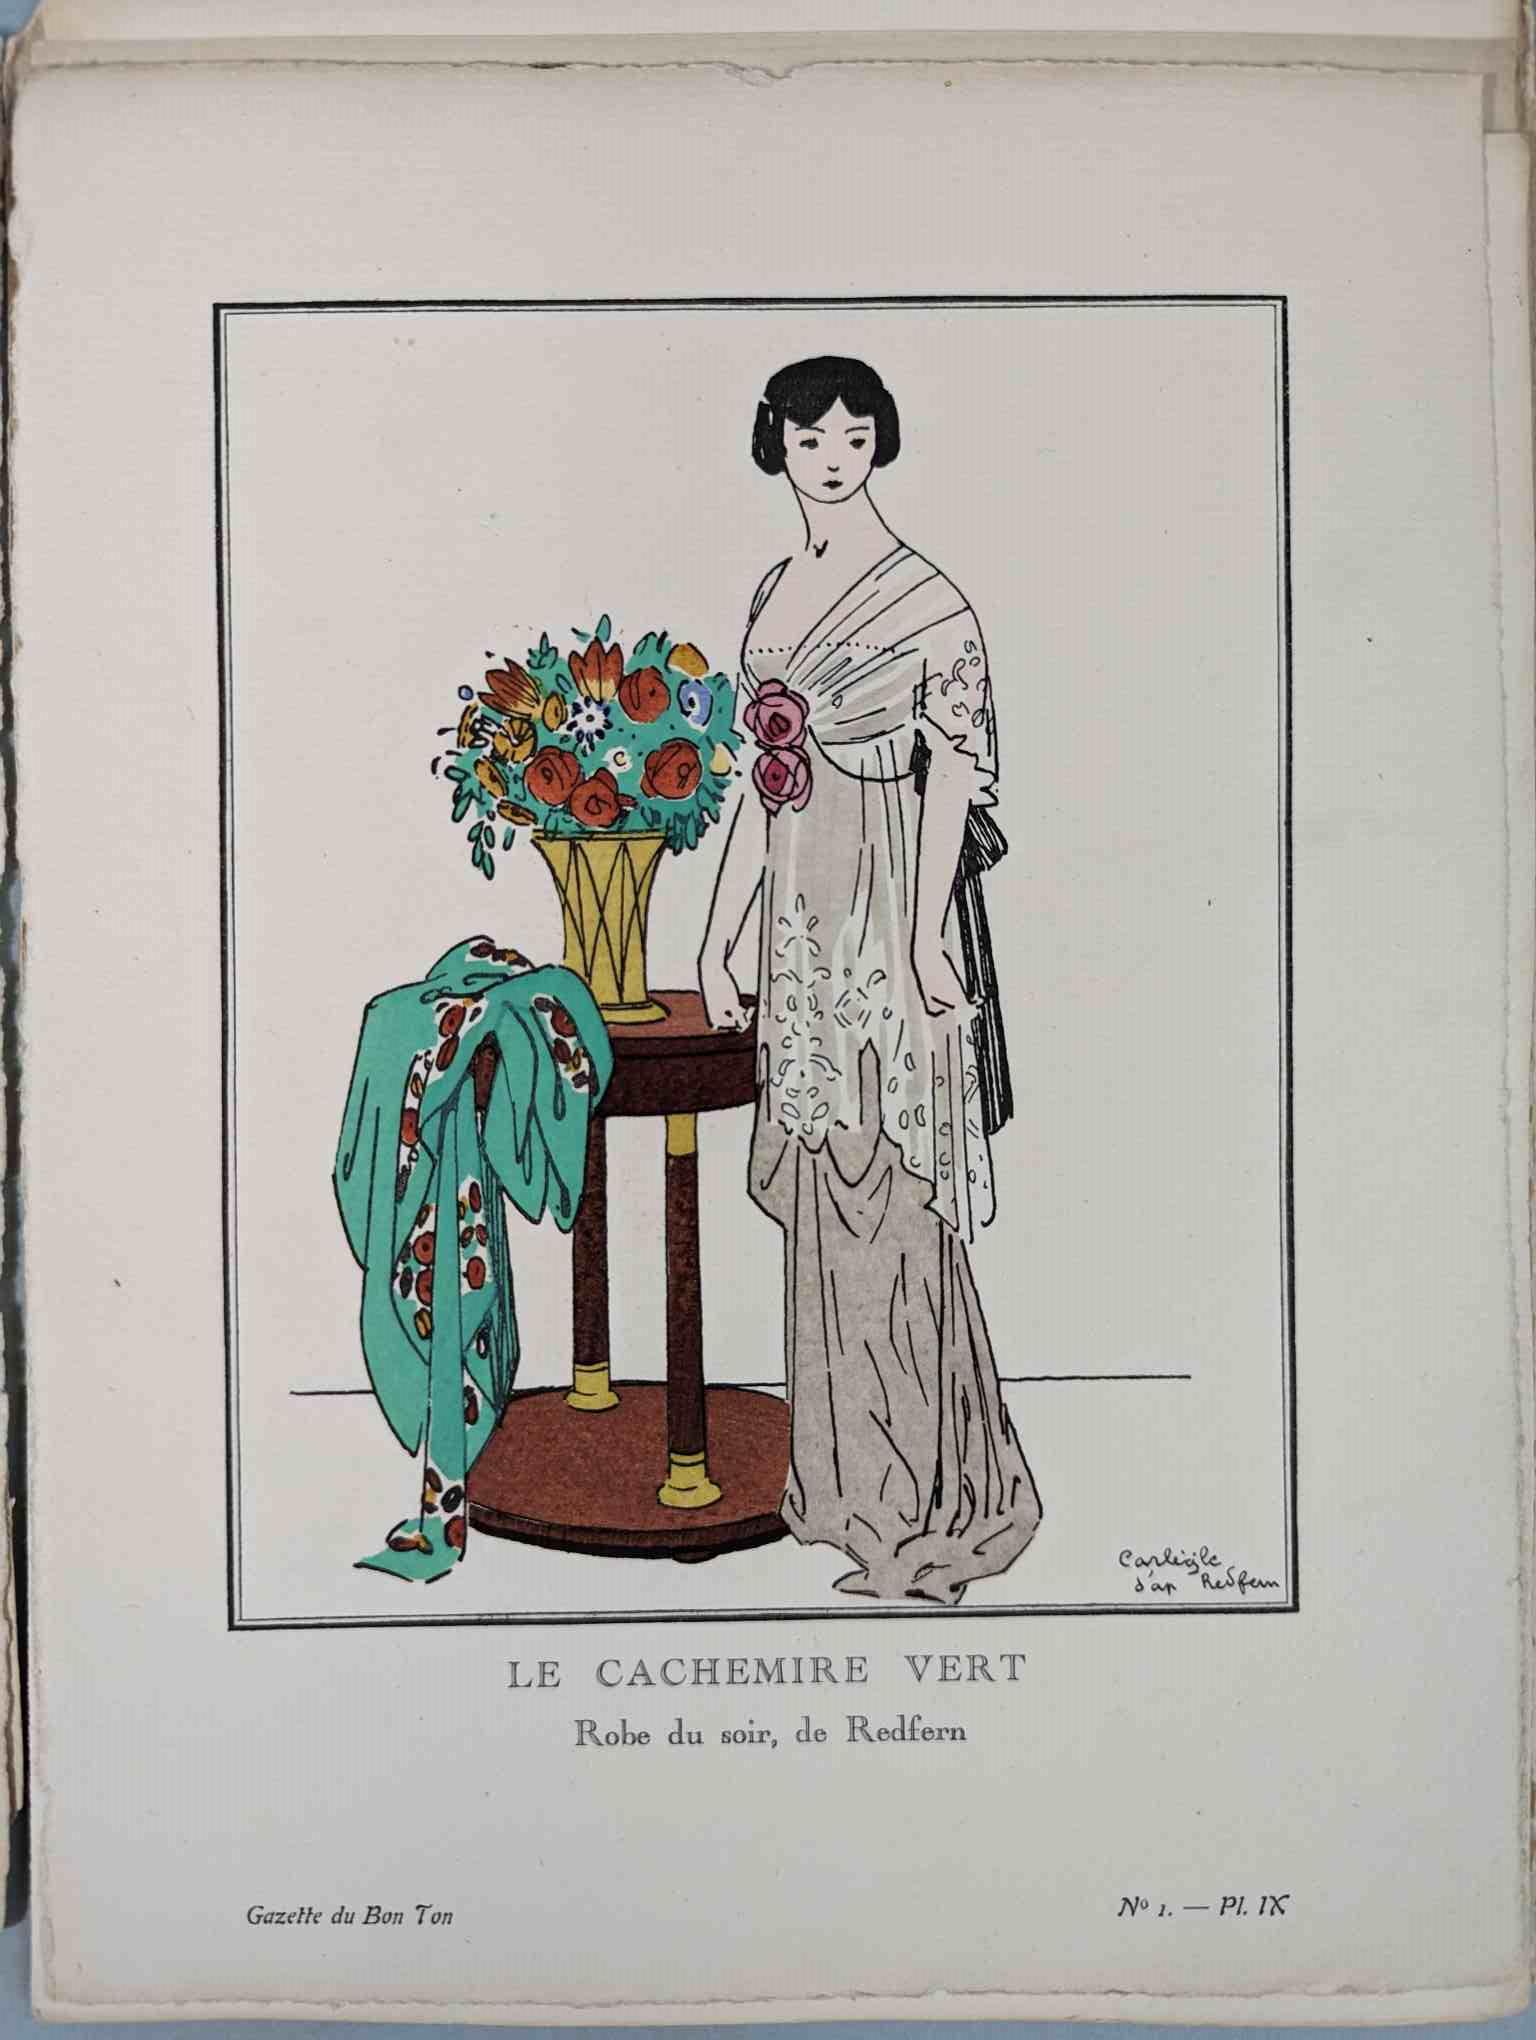 FASHION. VOGEL, Lucien. GAZETTE DU BON TON: Art-Modes & Frivolités, Paris 1913-14, 4 vol. - Image 9 of 54